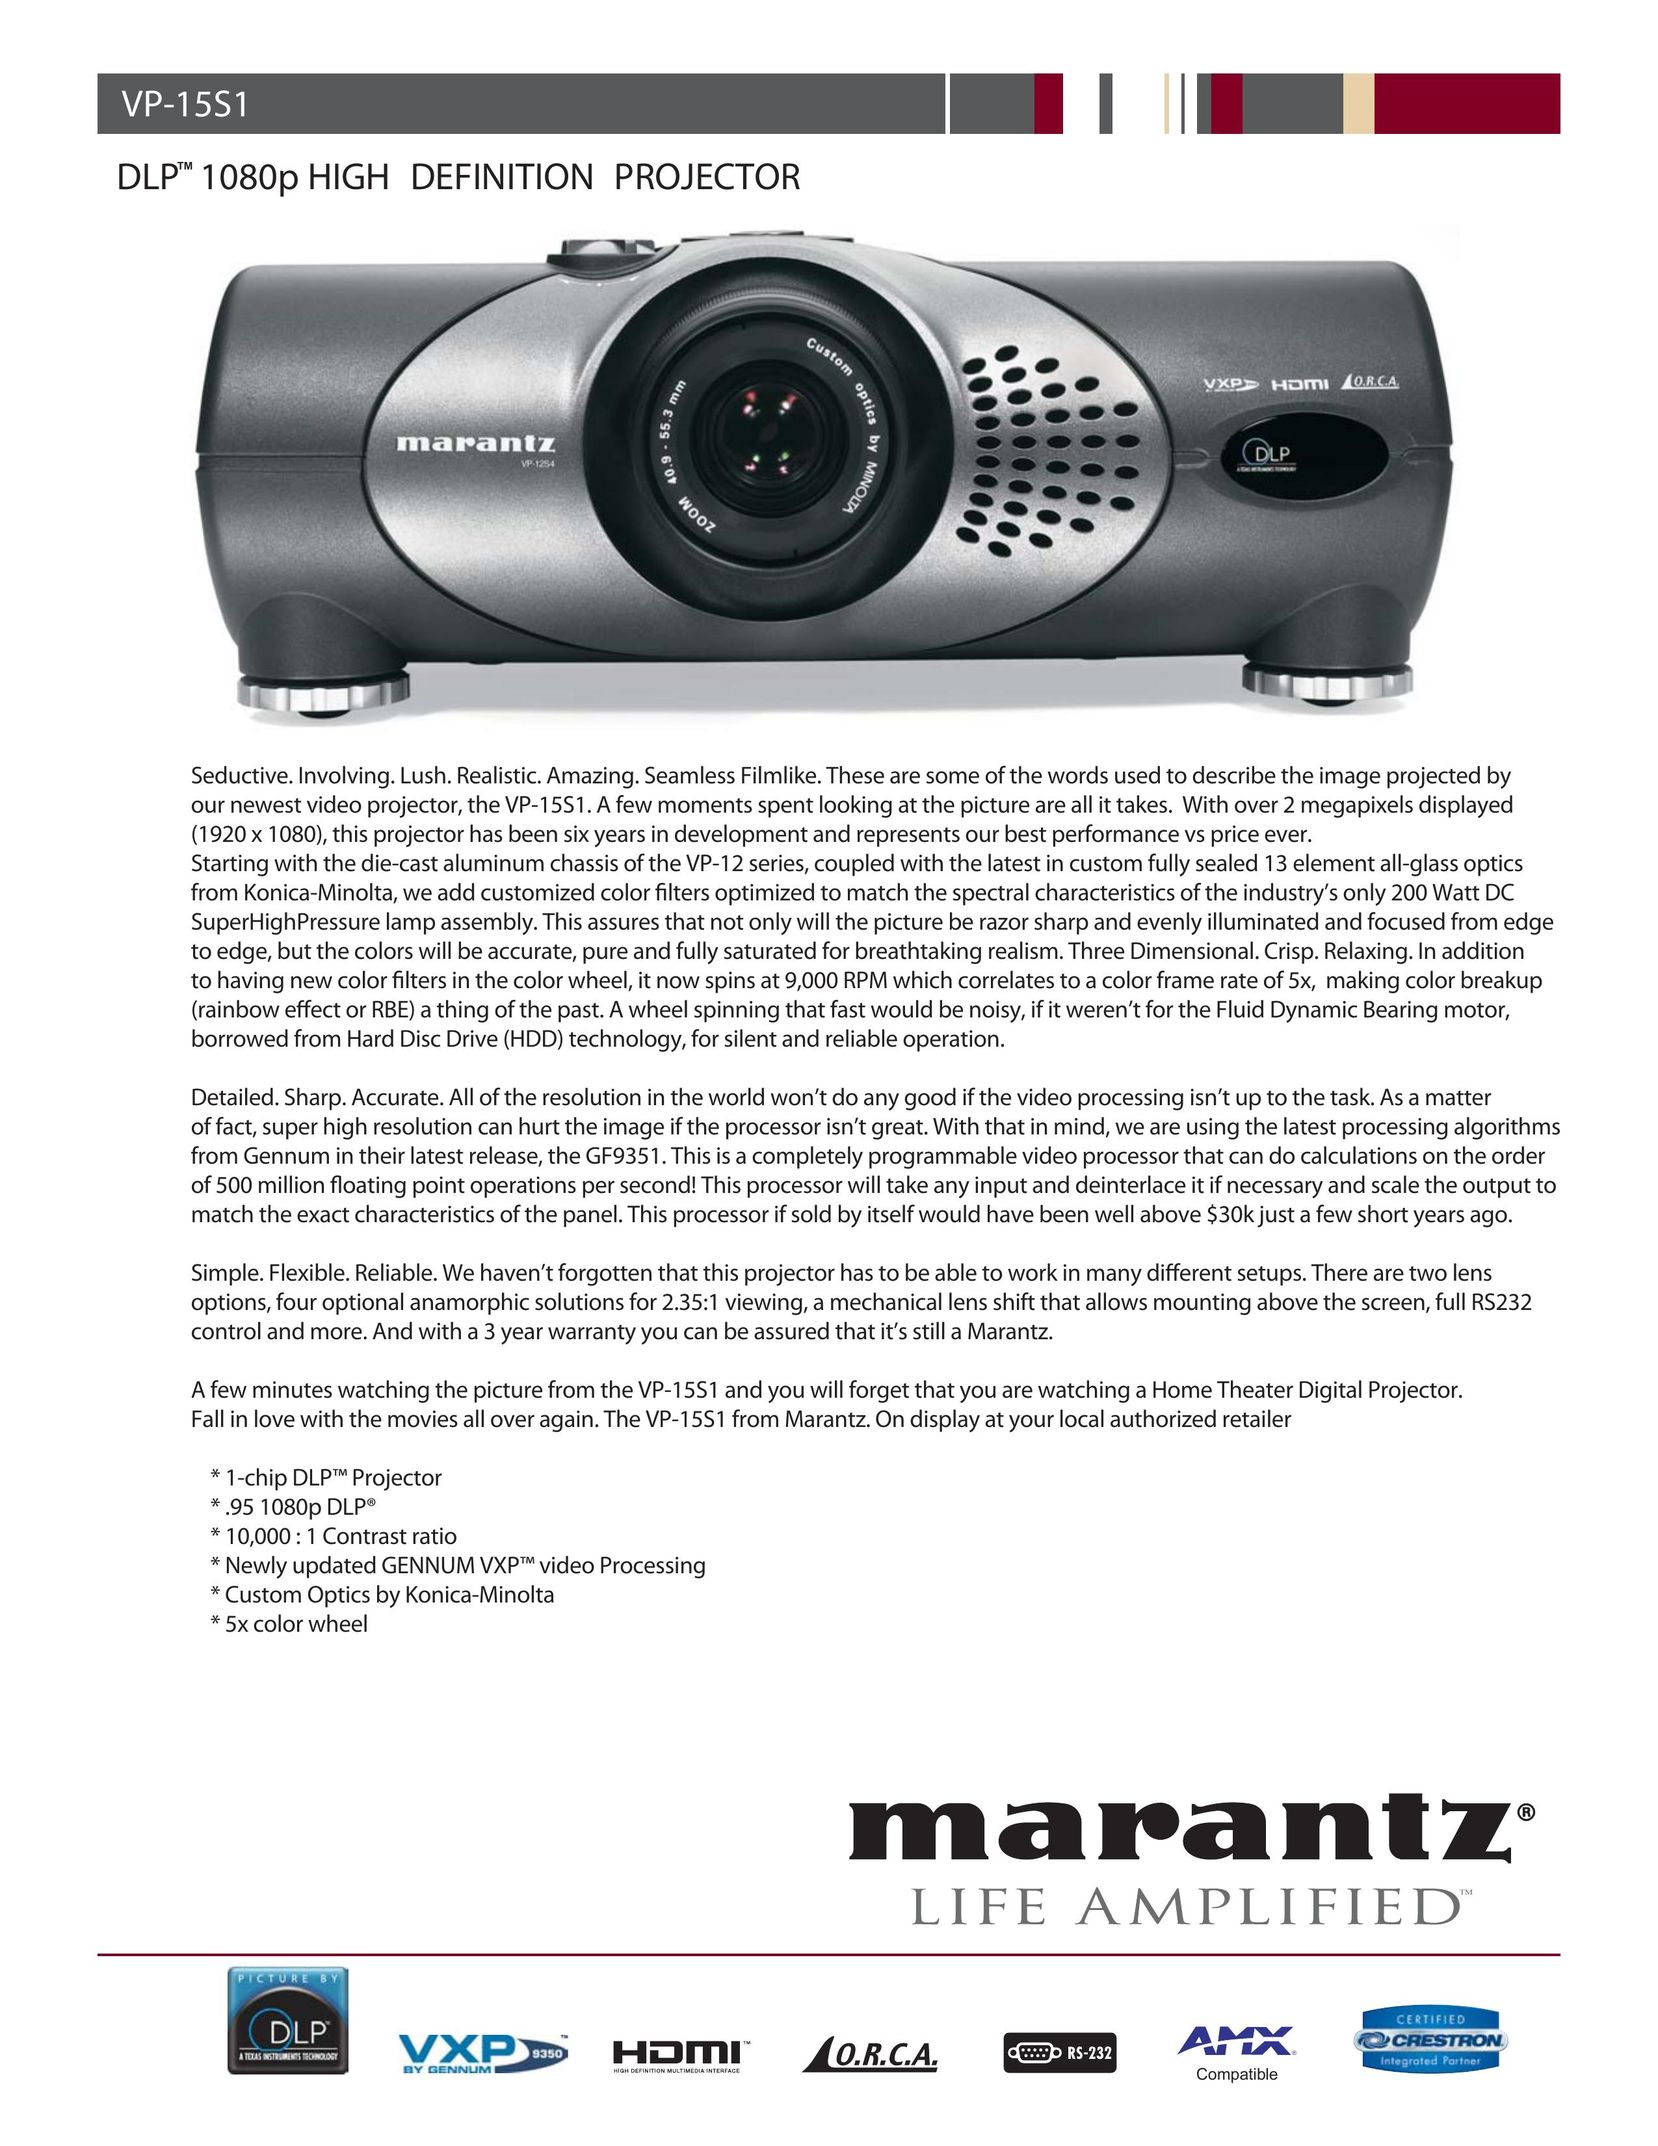 Marantz DLPTM 1080p Projector User Manual